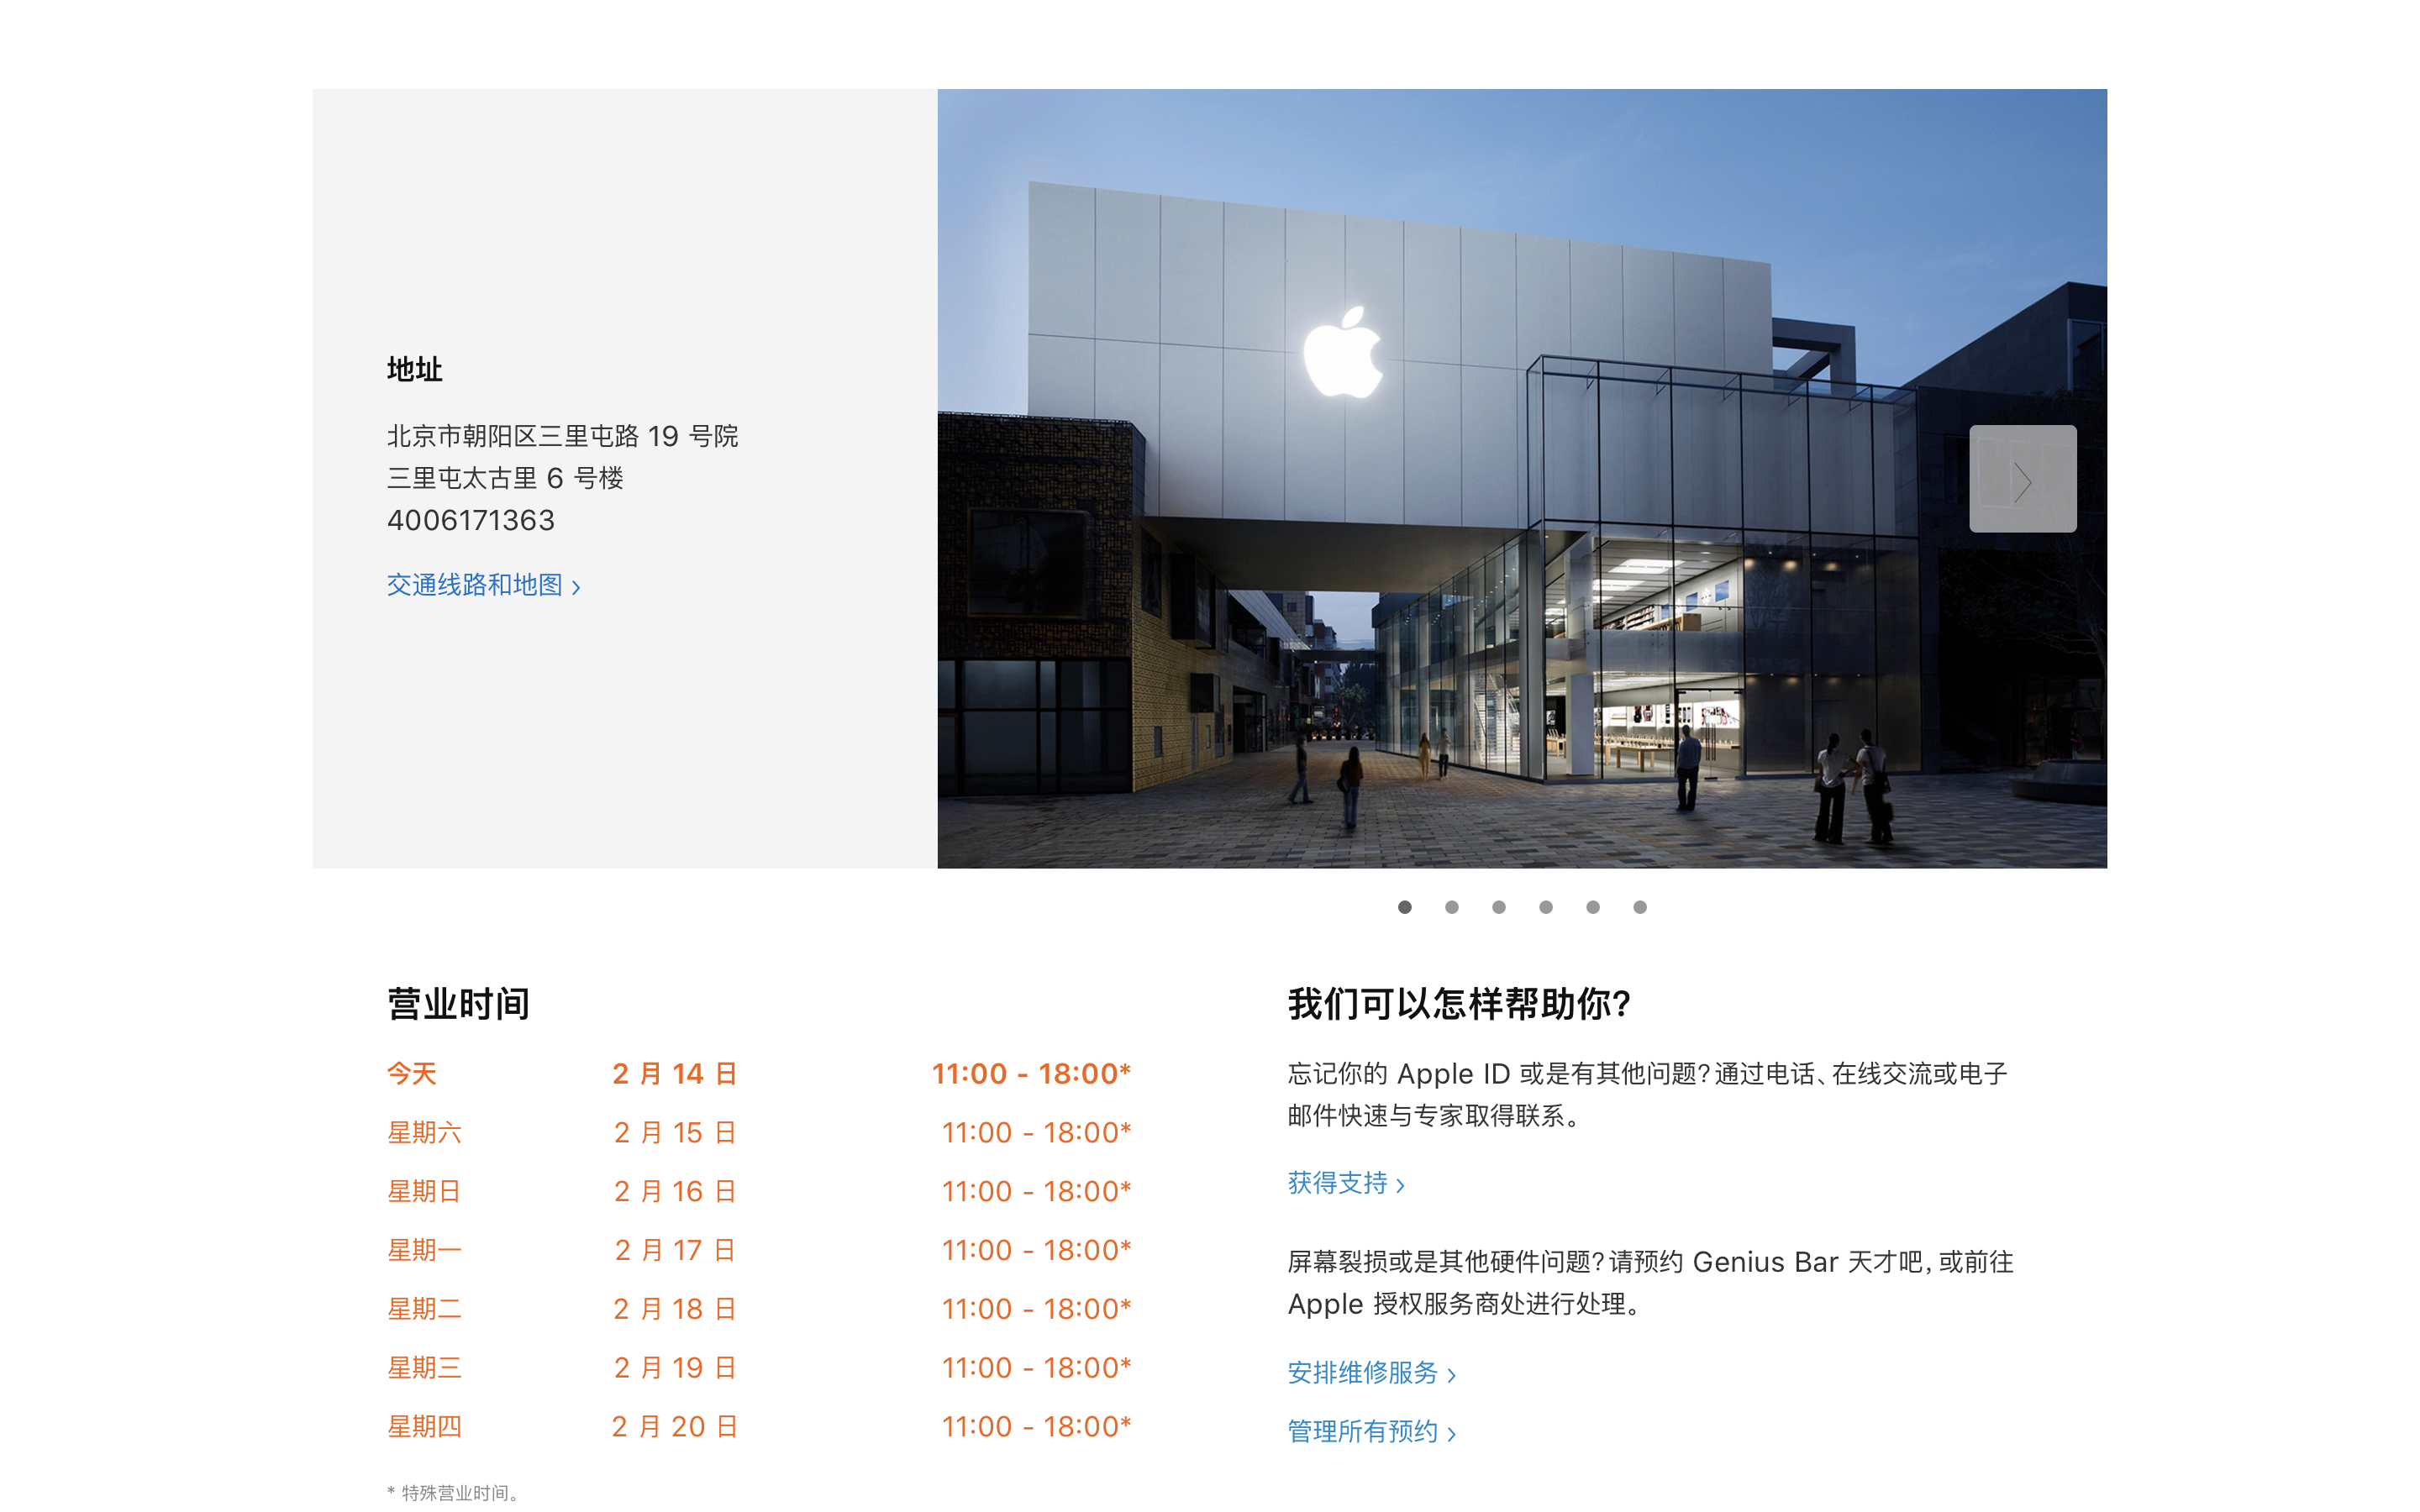 苹果北京五家零售店今日恢复营业其他城市零售店依然关闭